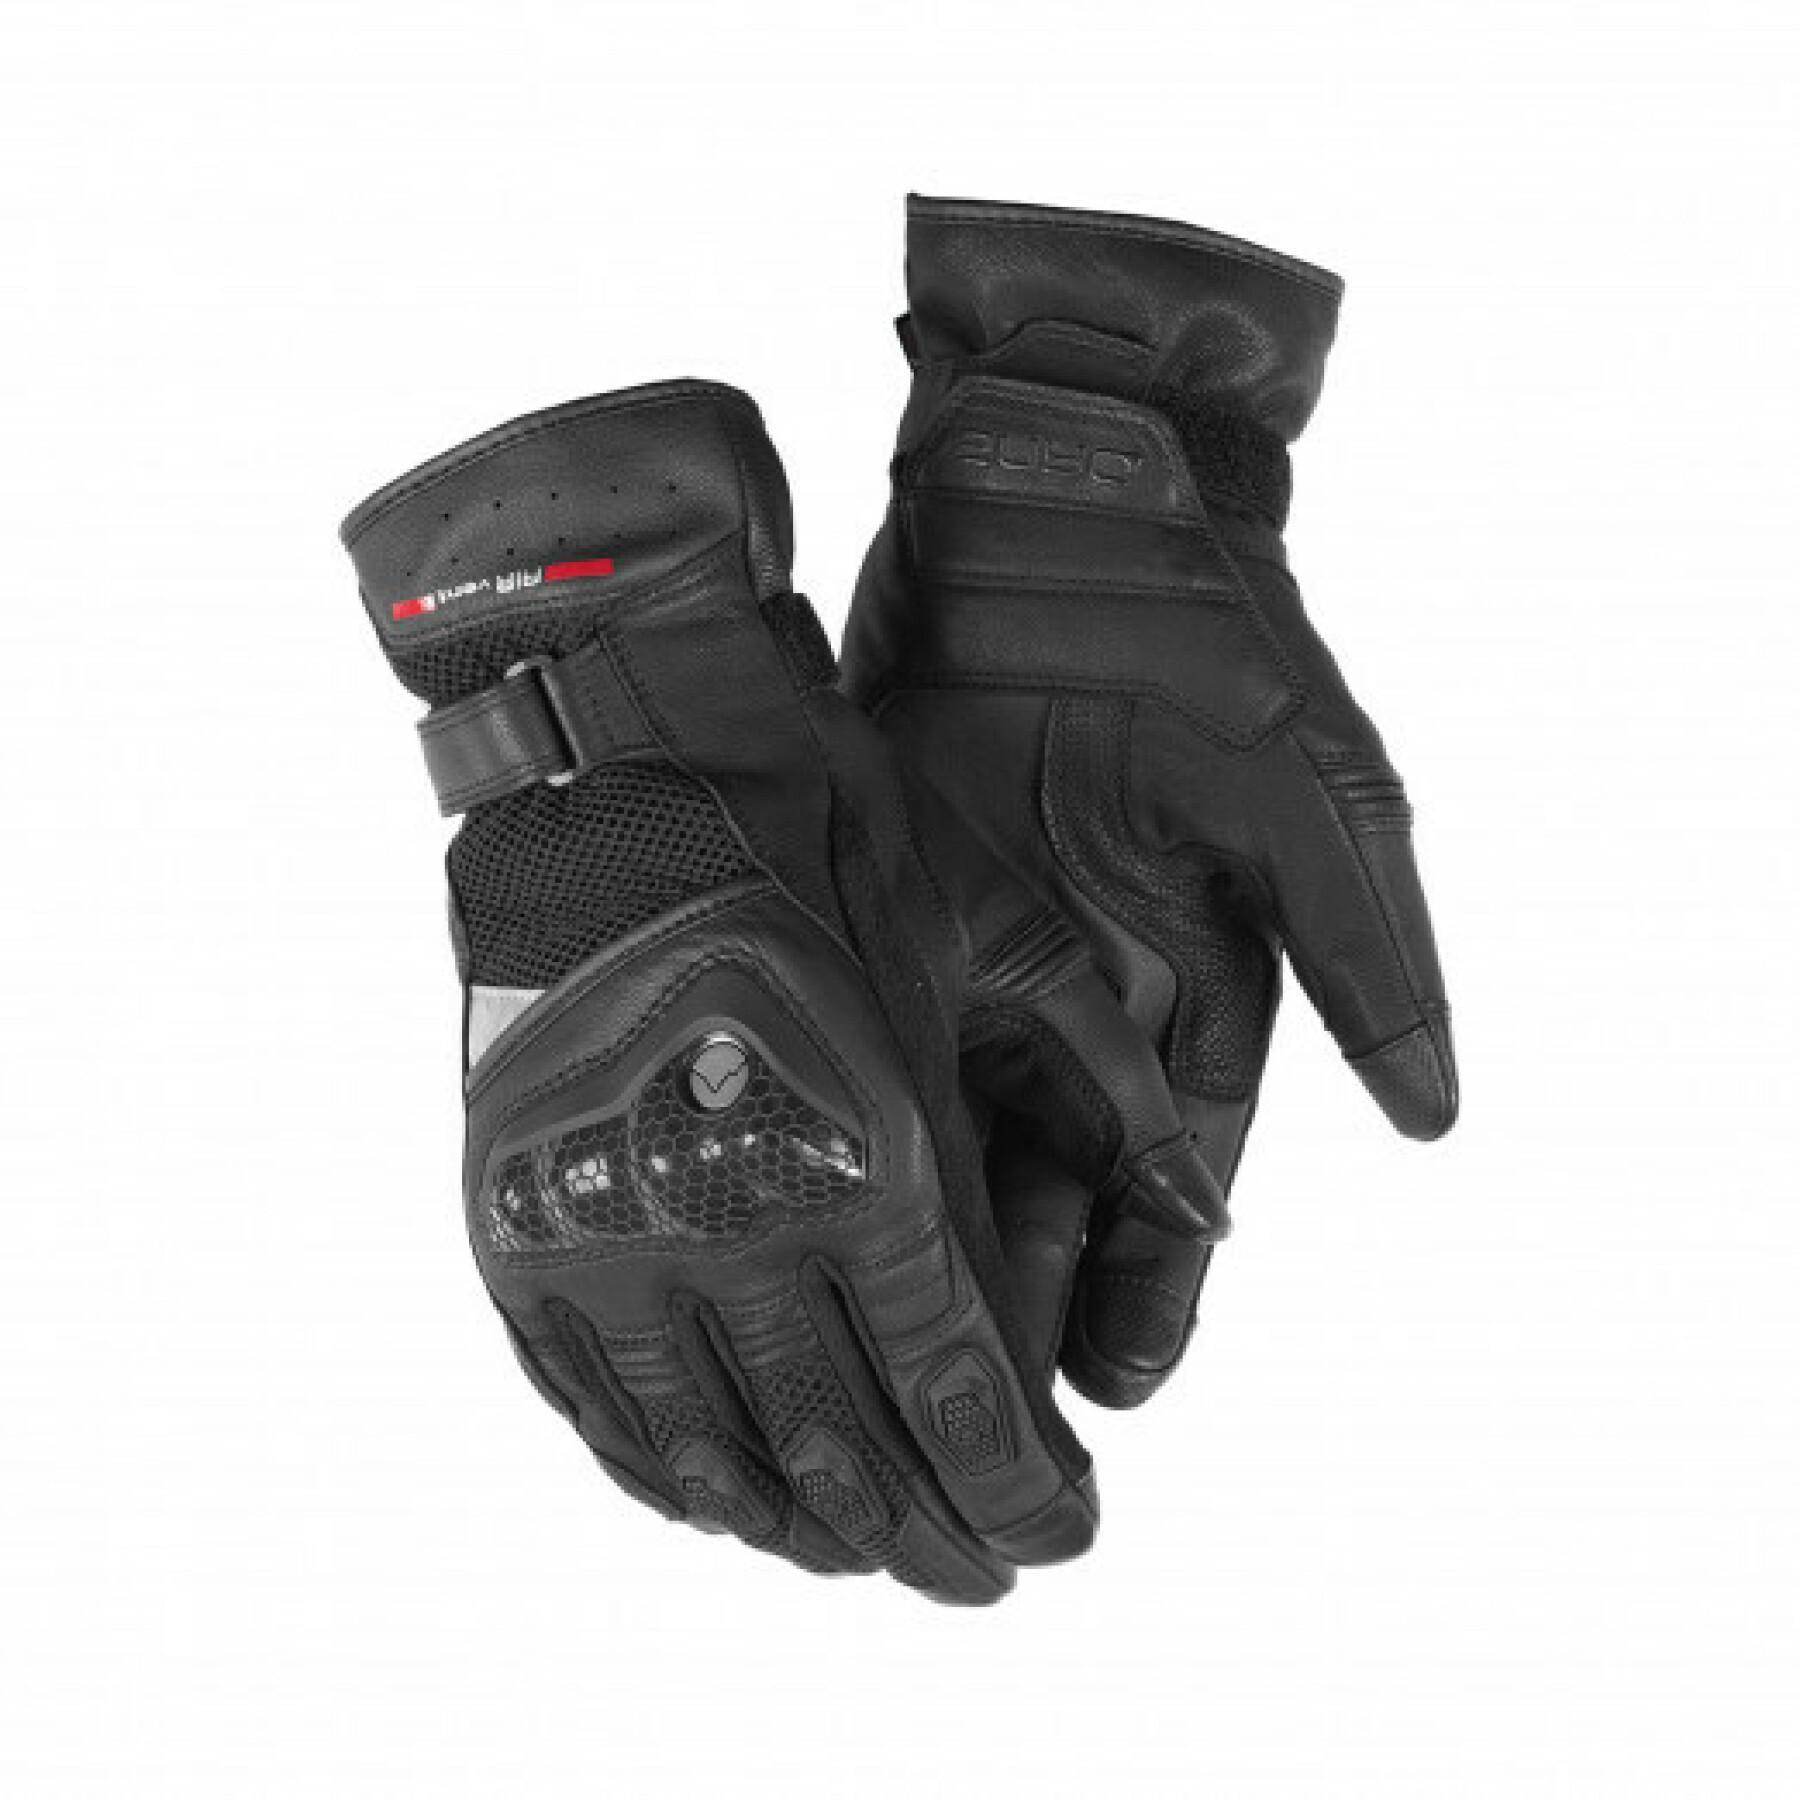 Heated motorcycle gloves Dane skelund